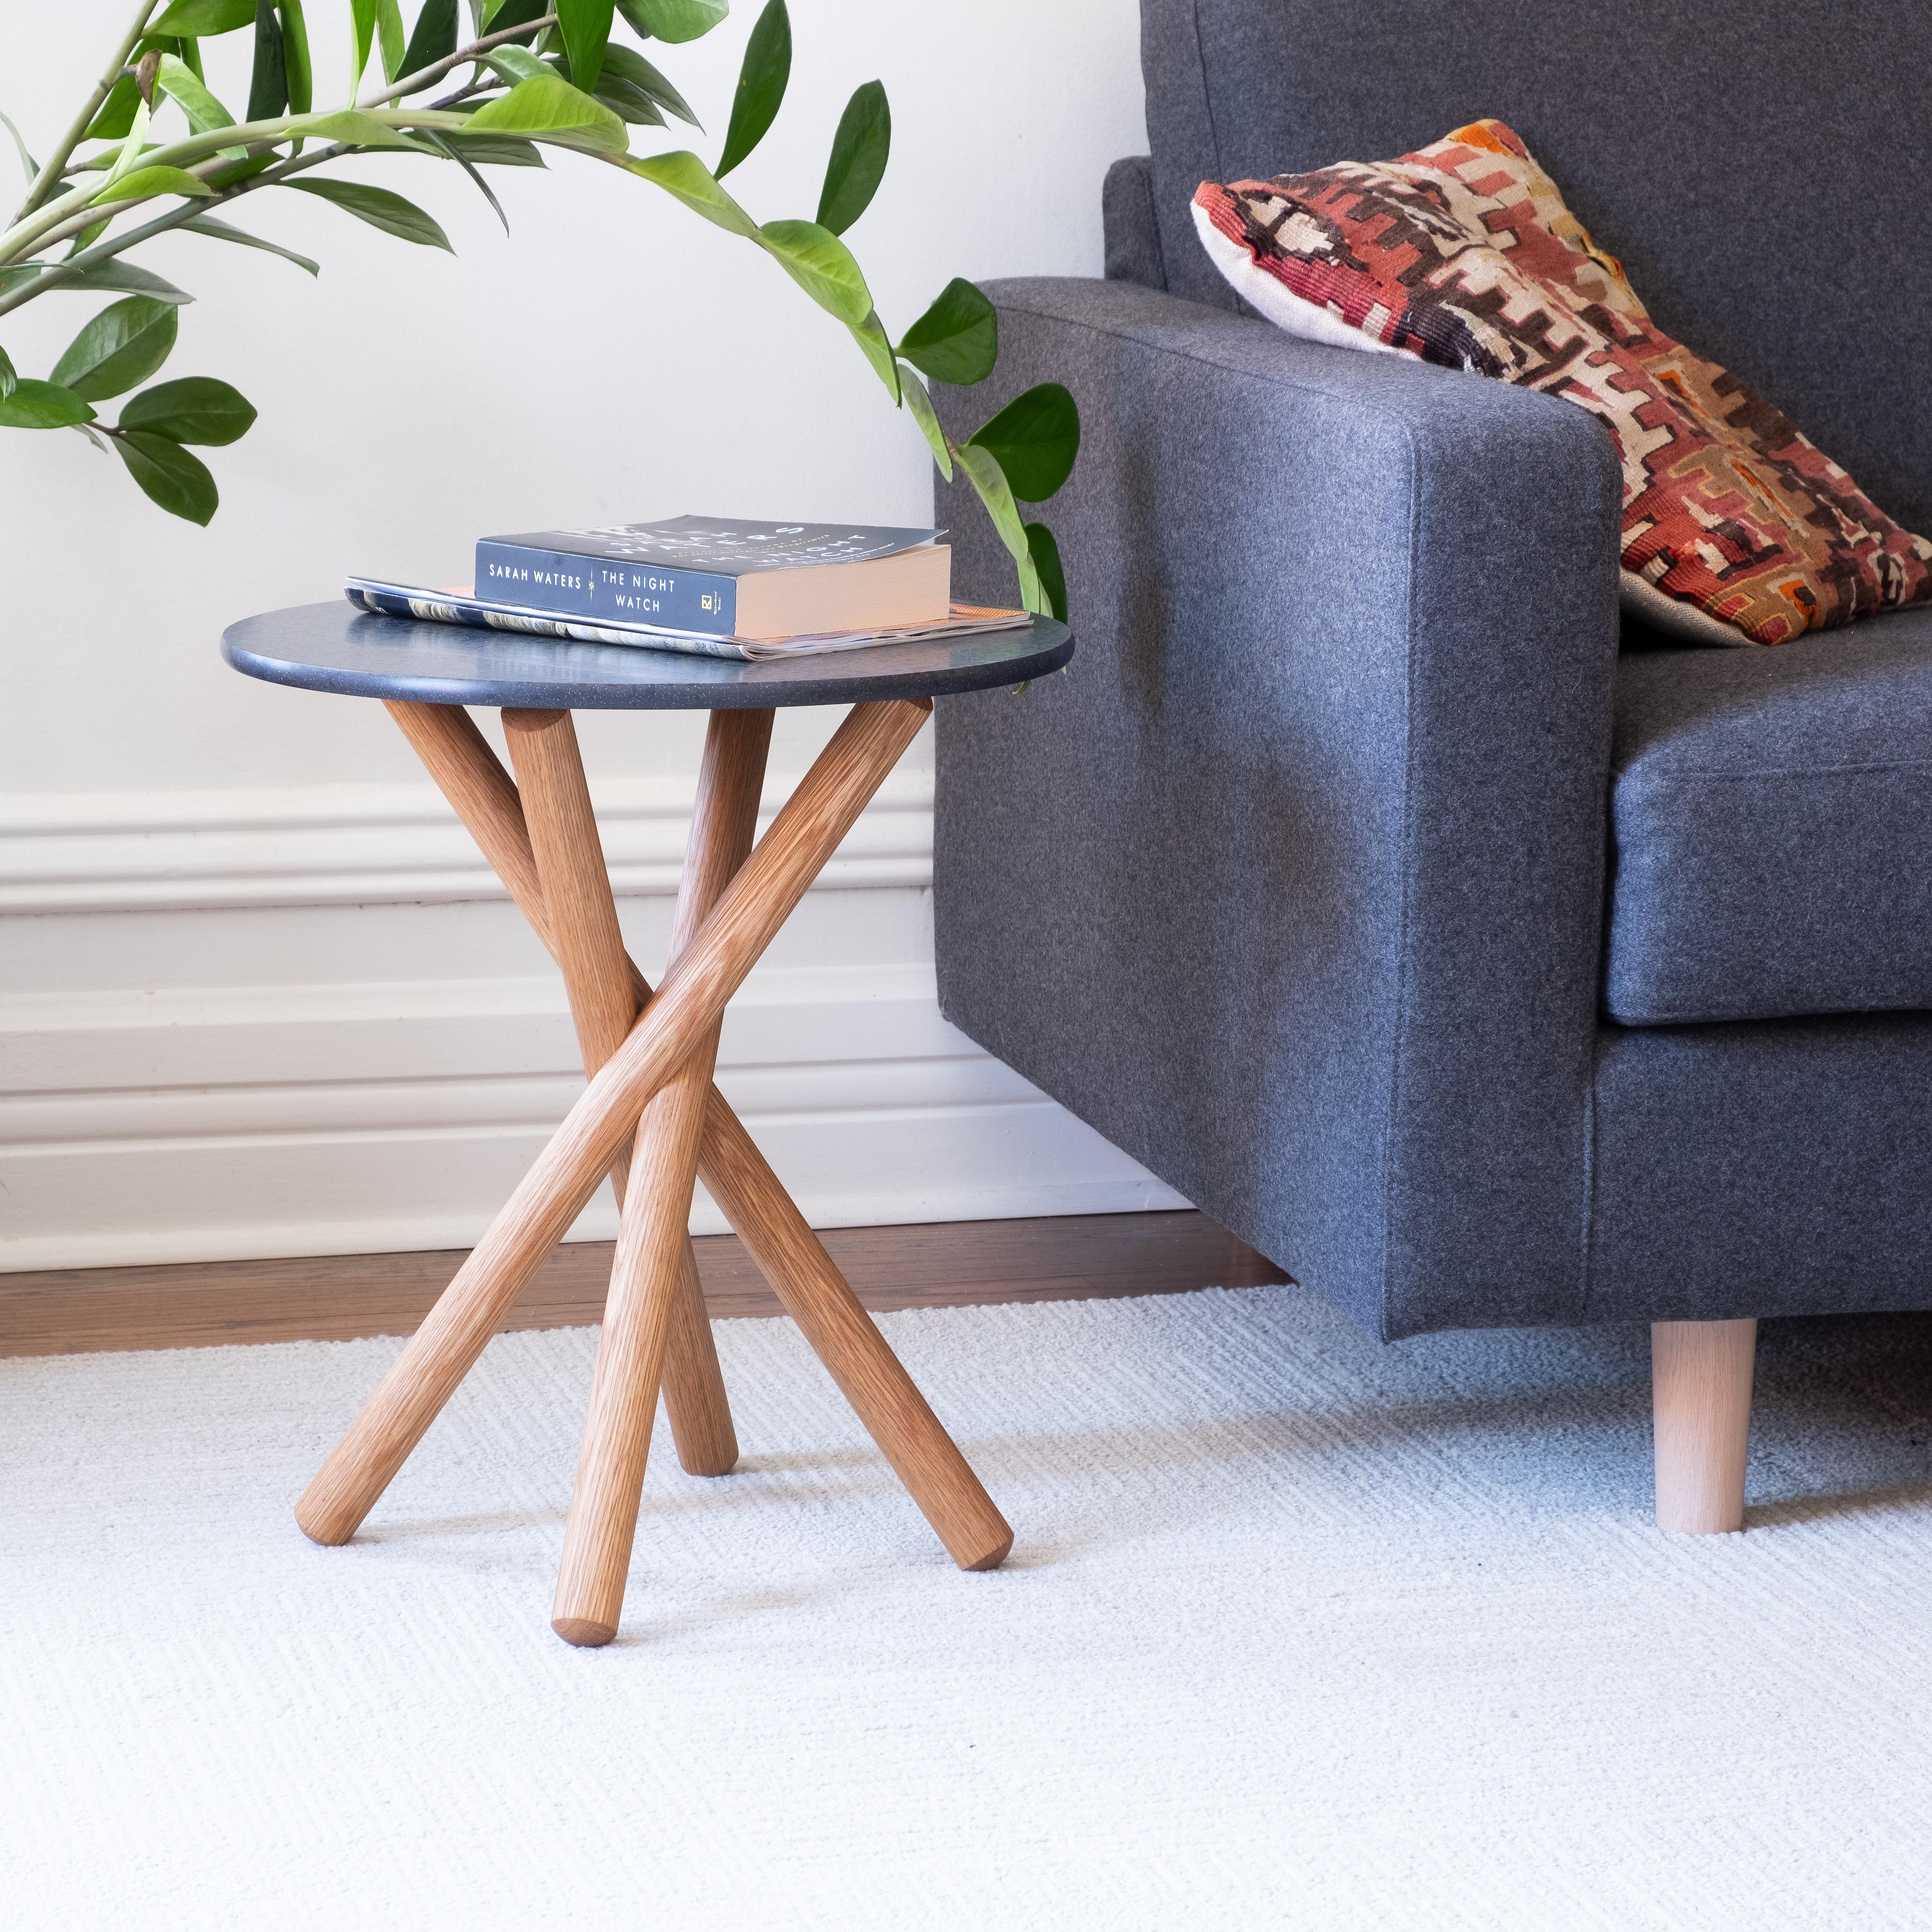 La X2 est une petite table d'appoint moderne qui allie une forme ludique à des matériaux raffinés et durables.

La base de la table est constituée de quatre pieds en bois cylindriques entrelacés aux extrémités arrondies. Le plateau circulaire est